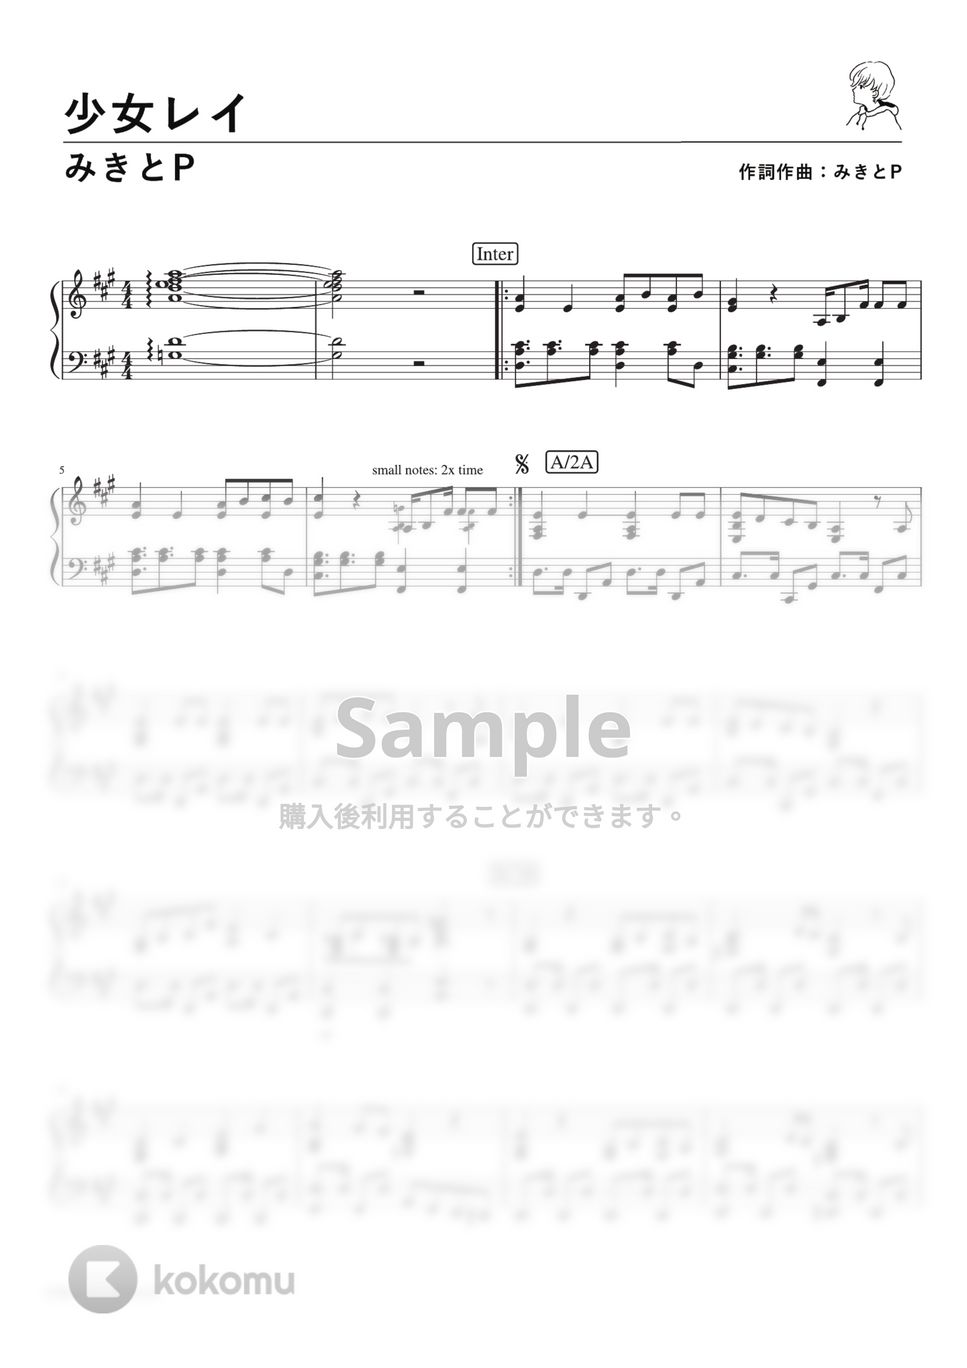 みきとP - 少女レイ (PianoSolo) by 深根 / Fukane